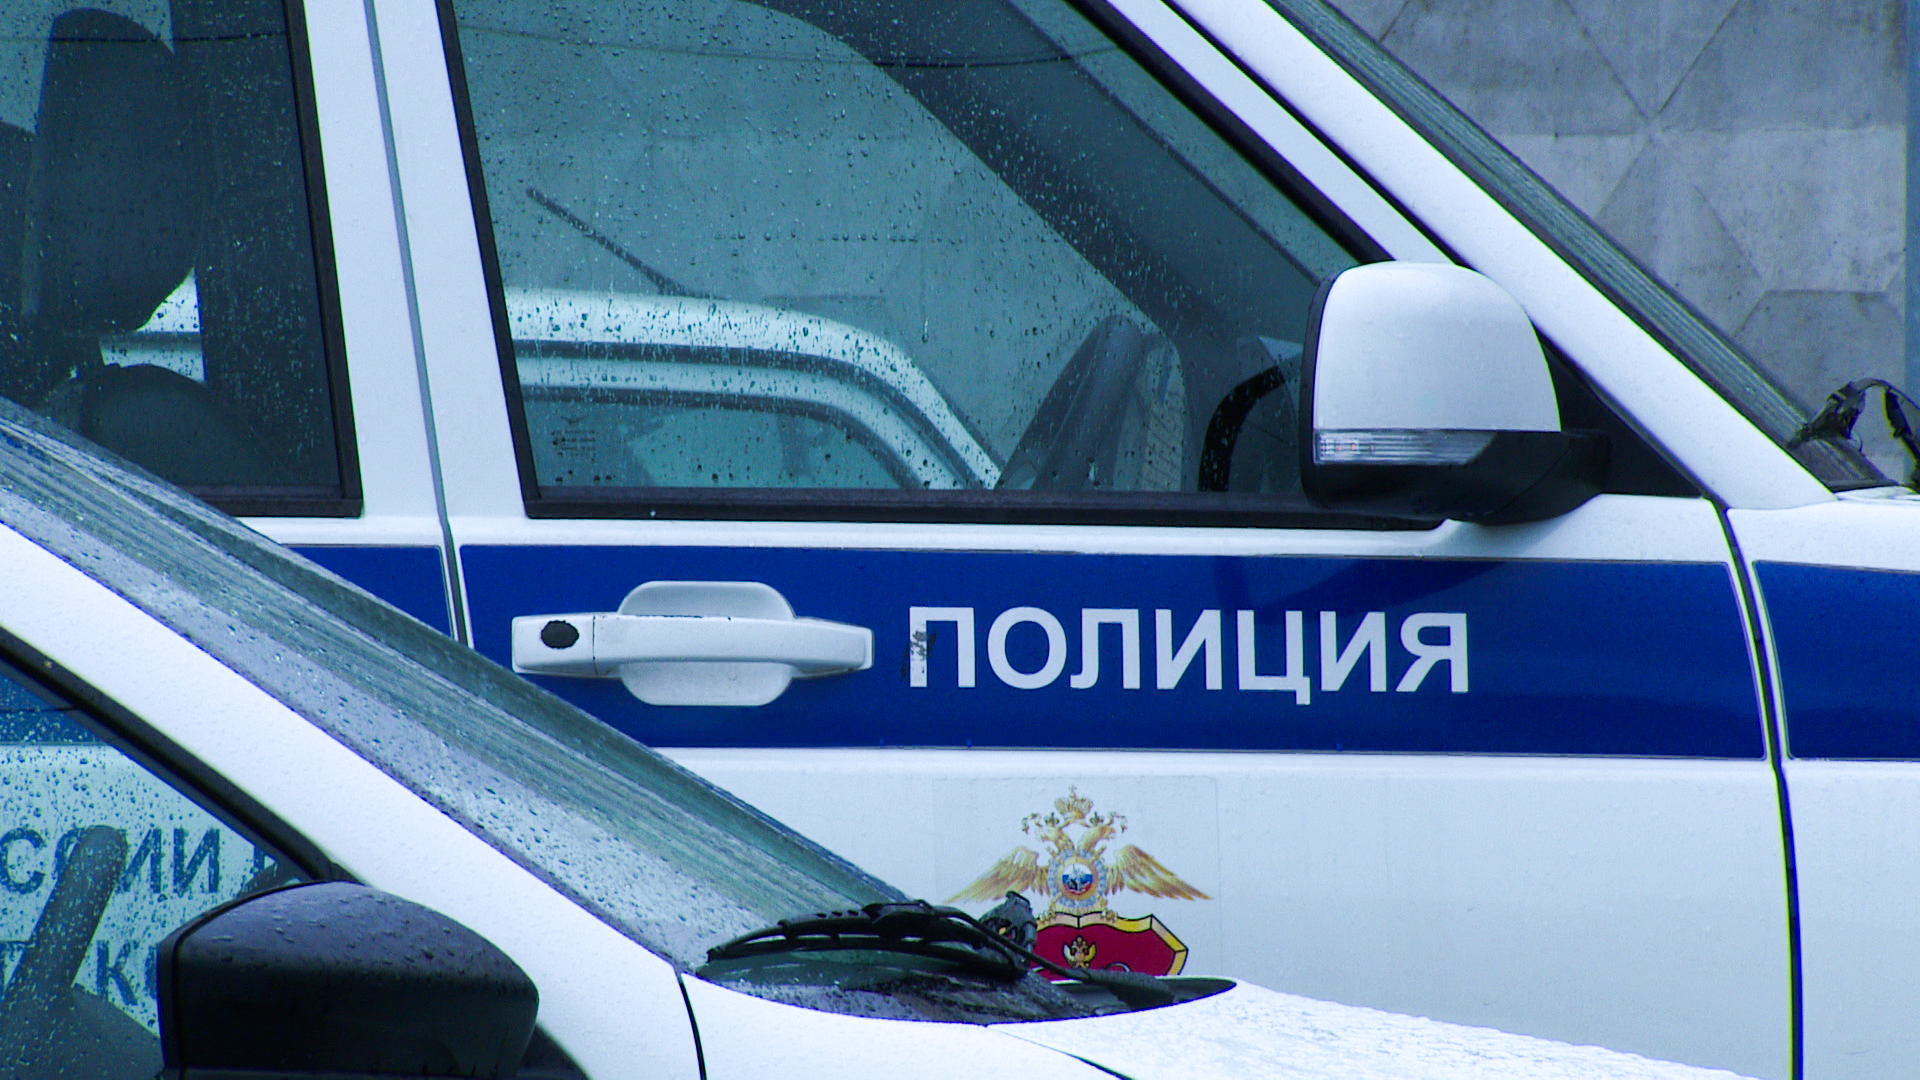 В Петербурге задержали мужчину, у которого нашли почти 400 граммов наркотиков